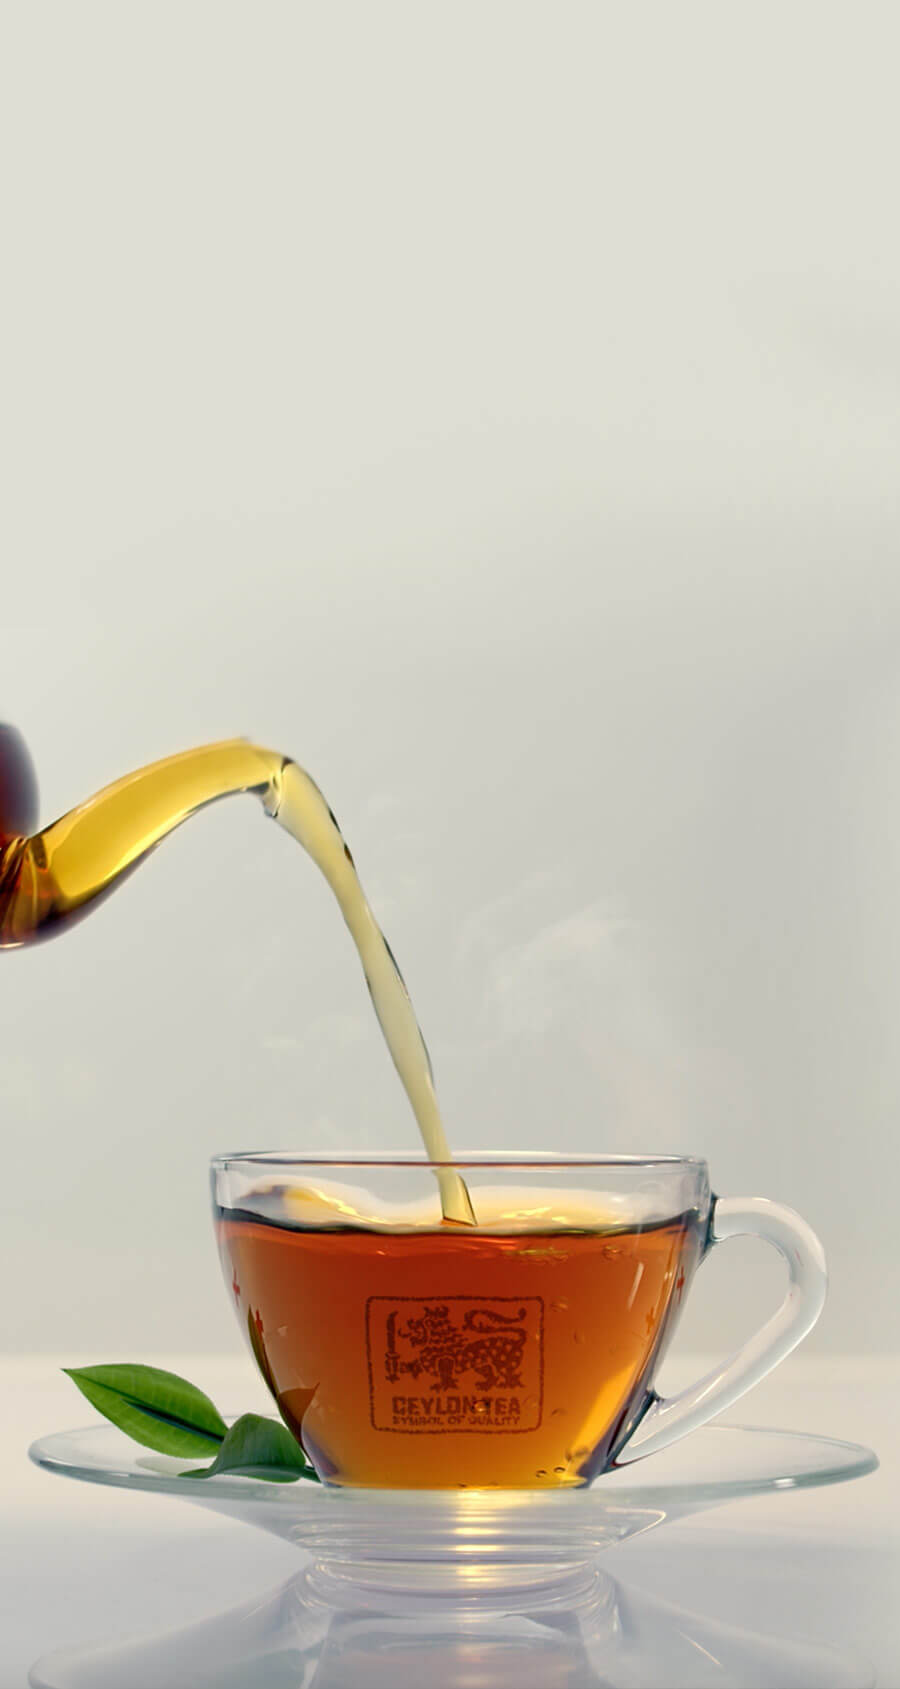 Sri lankai fogyókúrás tea